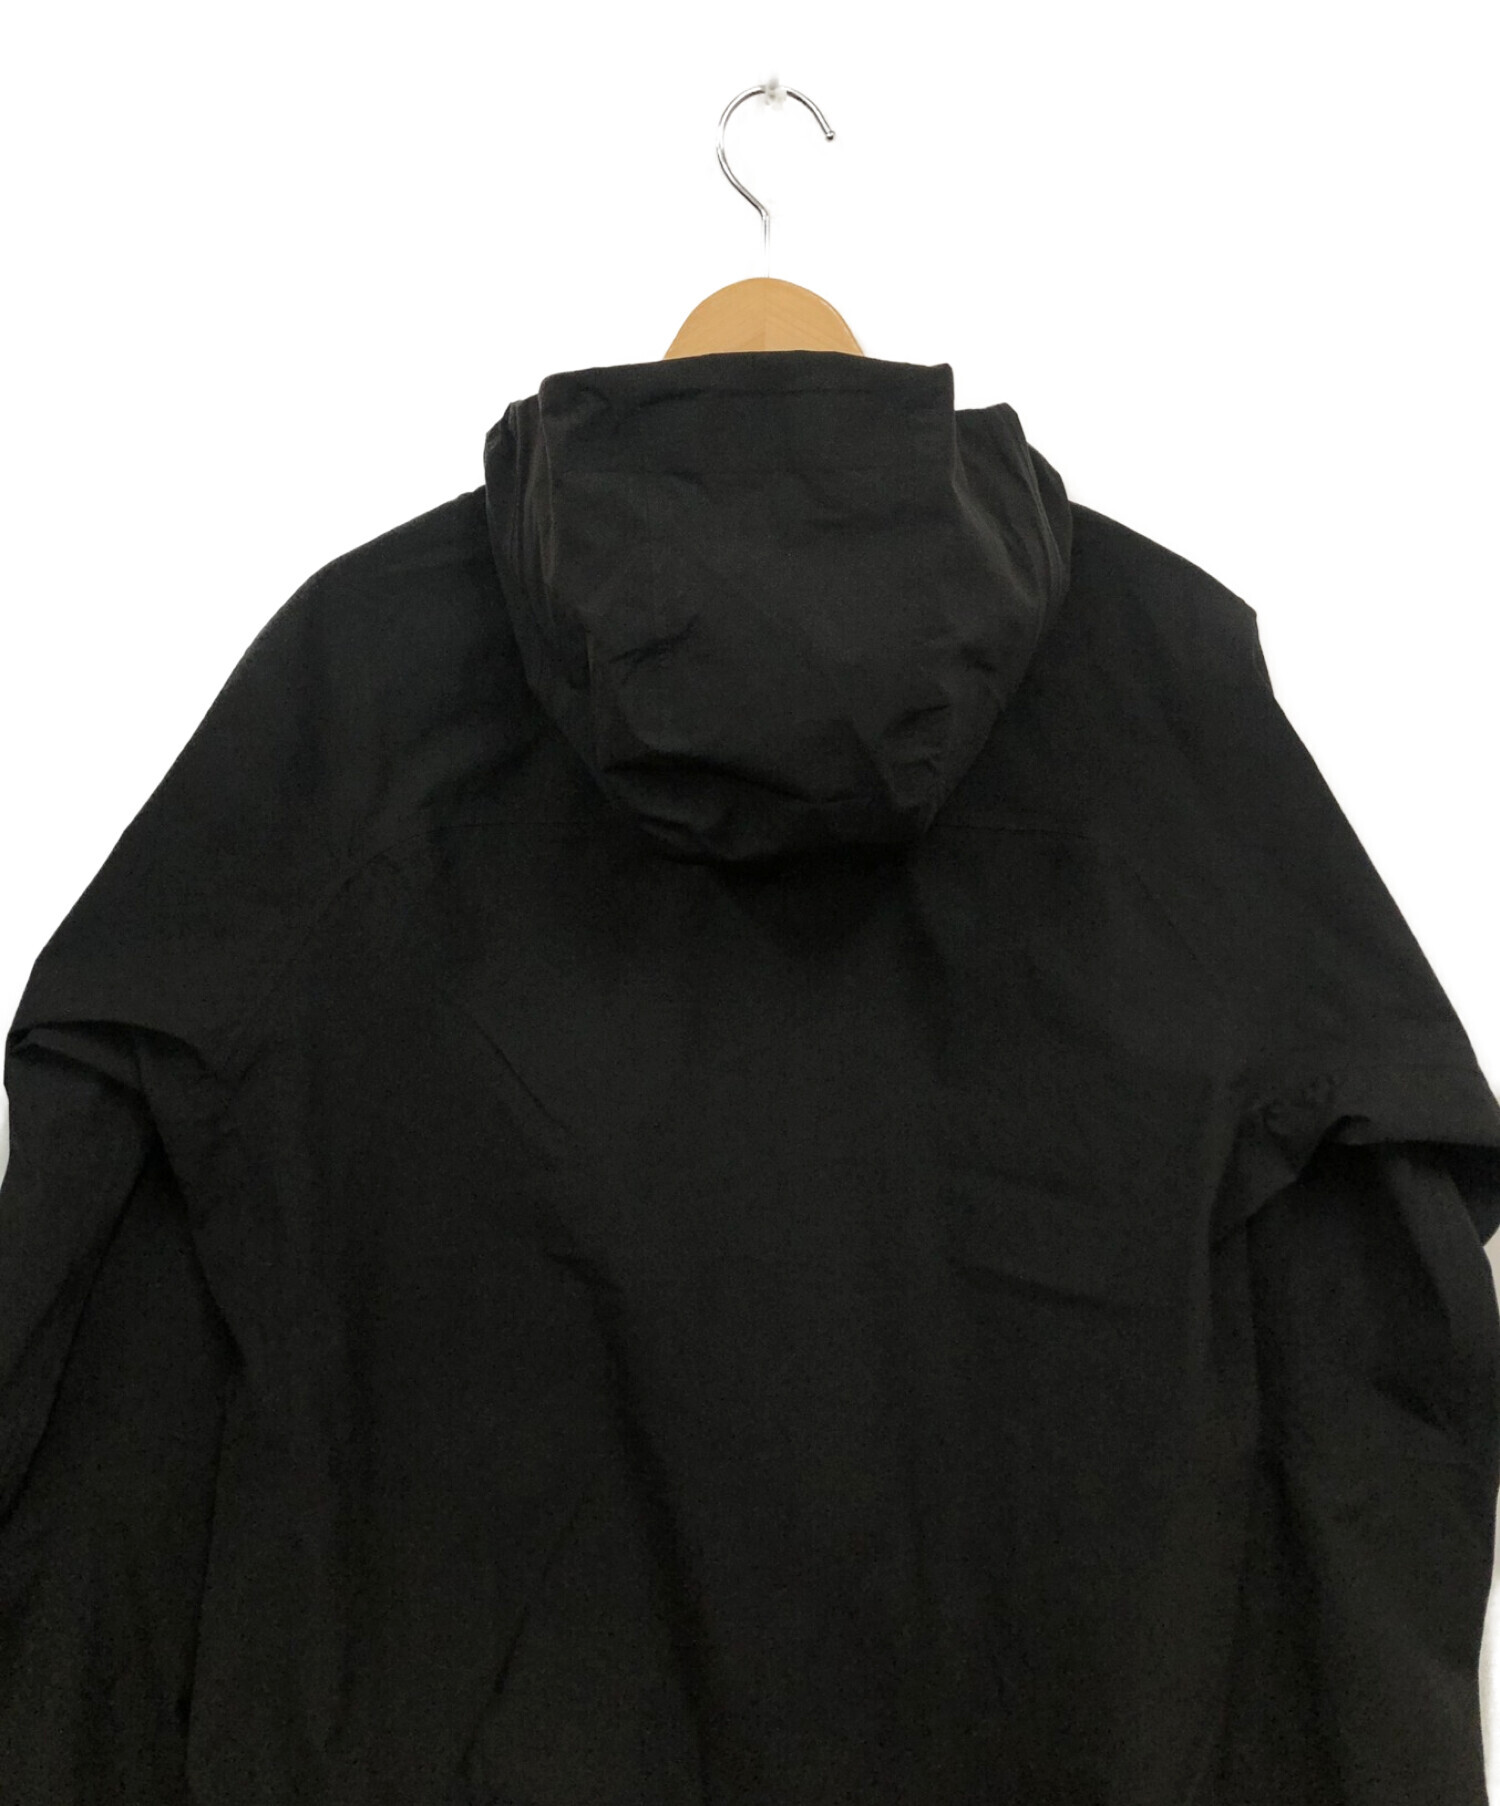 PUMA (プーマ) ジャケット ブラック サイズ:L